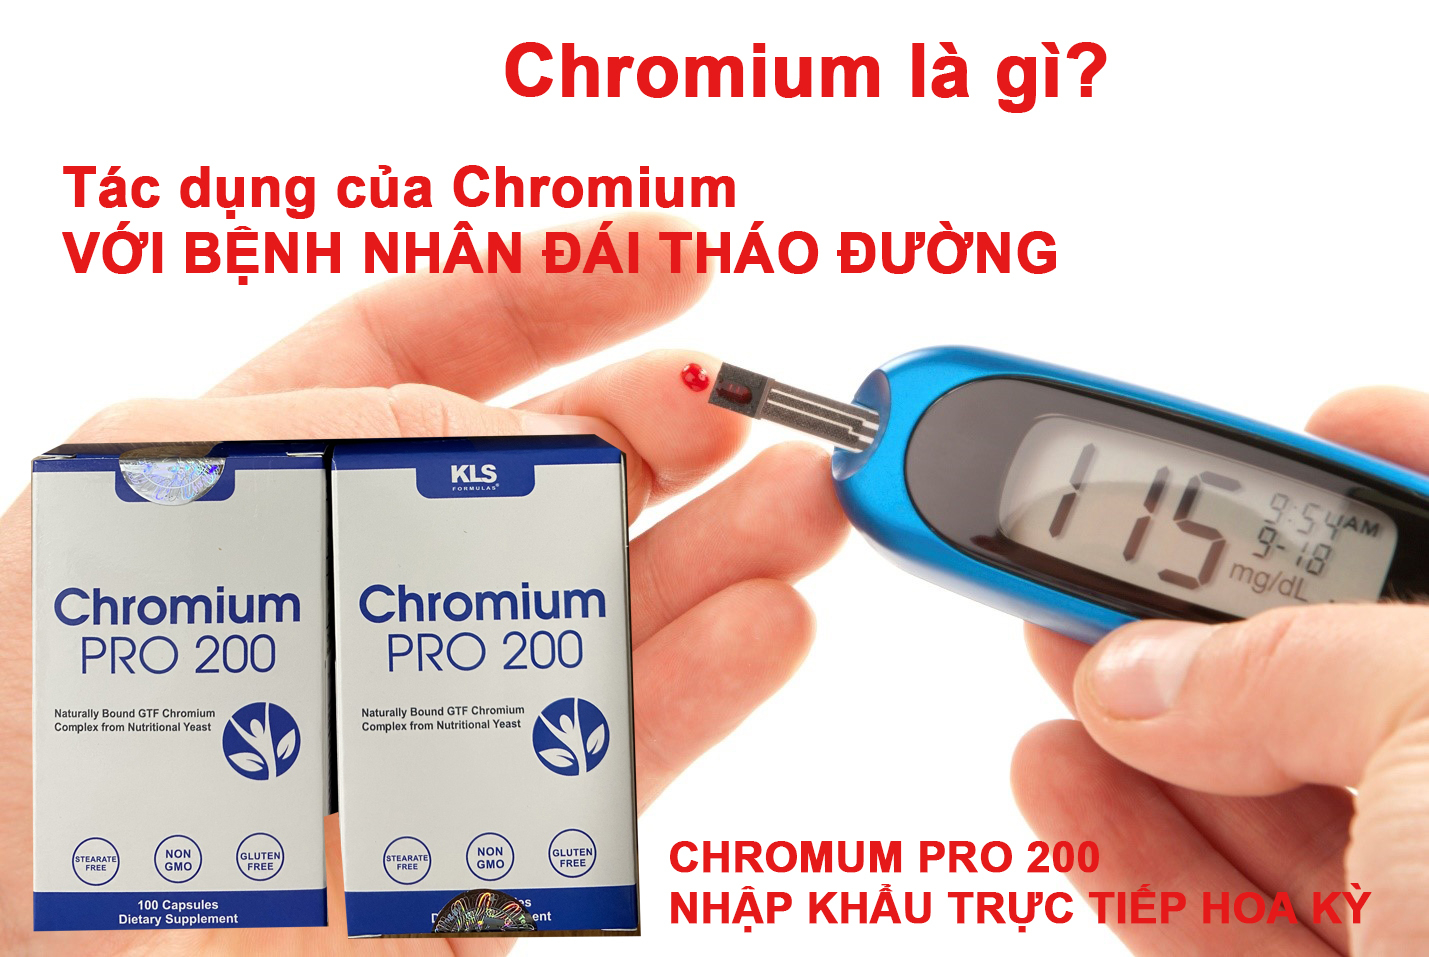 Chromium là gì? Tác dụng của Chromium với bệnh nhân tiểu đường